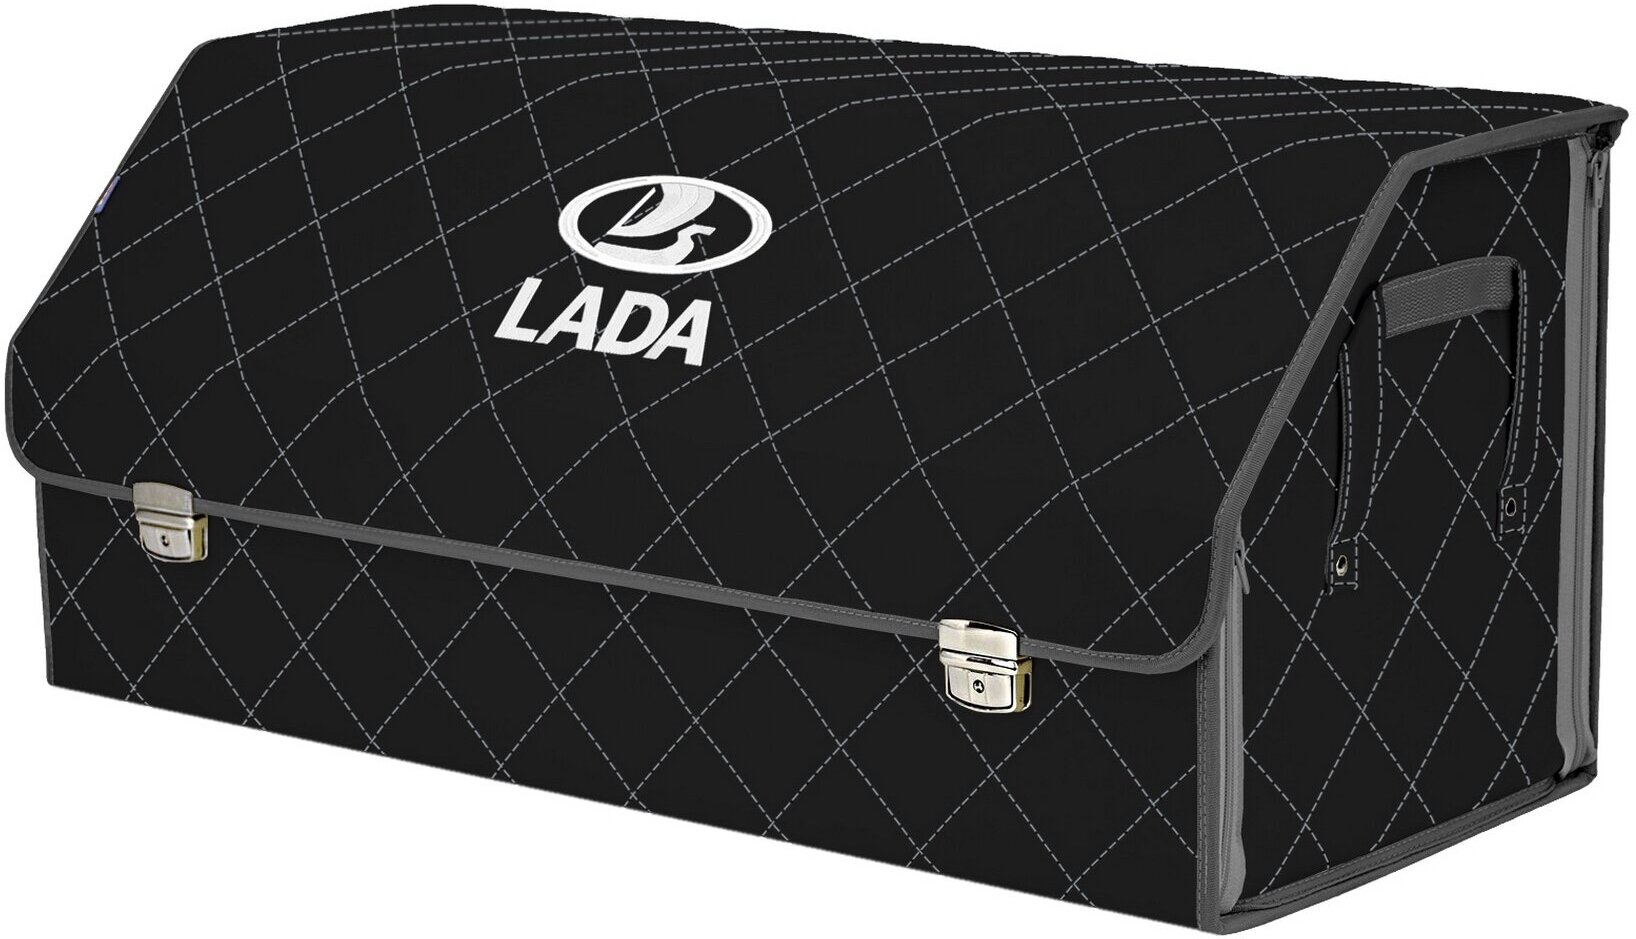 Органайзер-саквояж в багажник "Союз Премиум" (размер XXL). Цвет: черный с серой прострочкой Ромб и вышивкой LADA (лада).